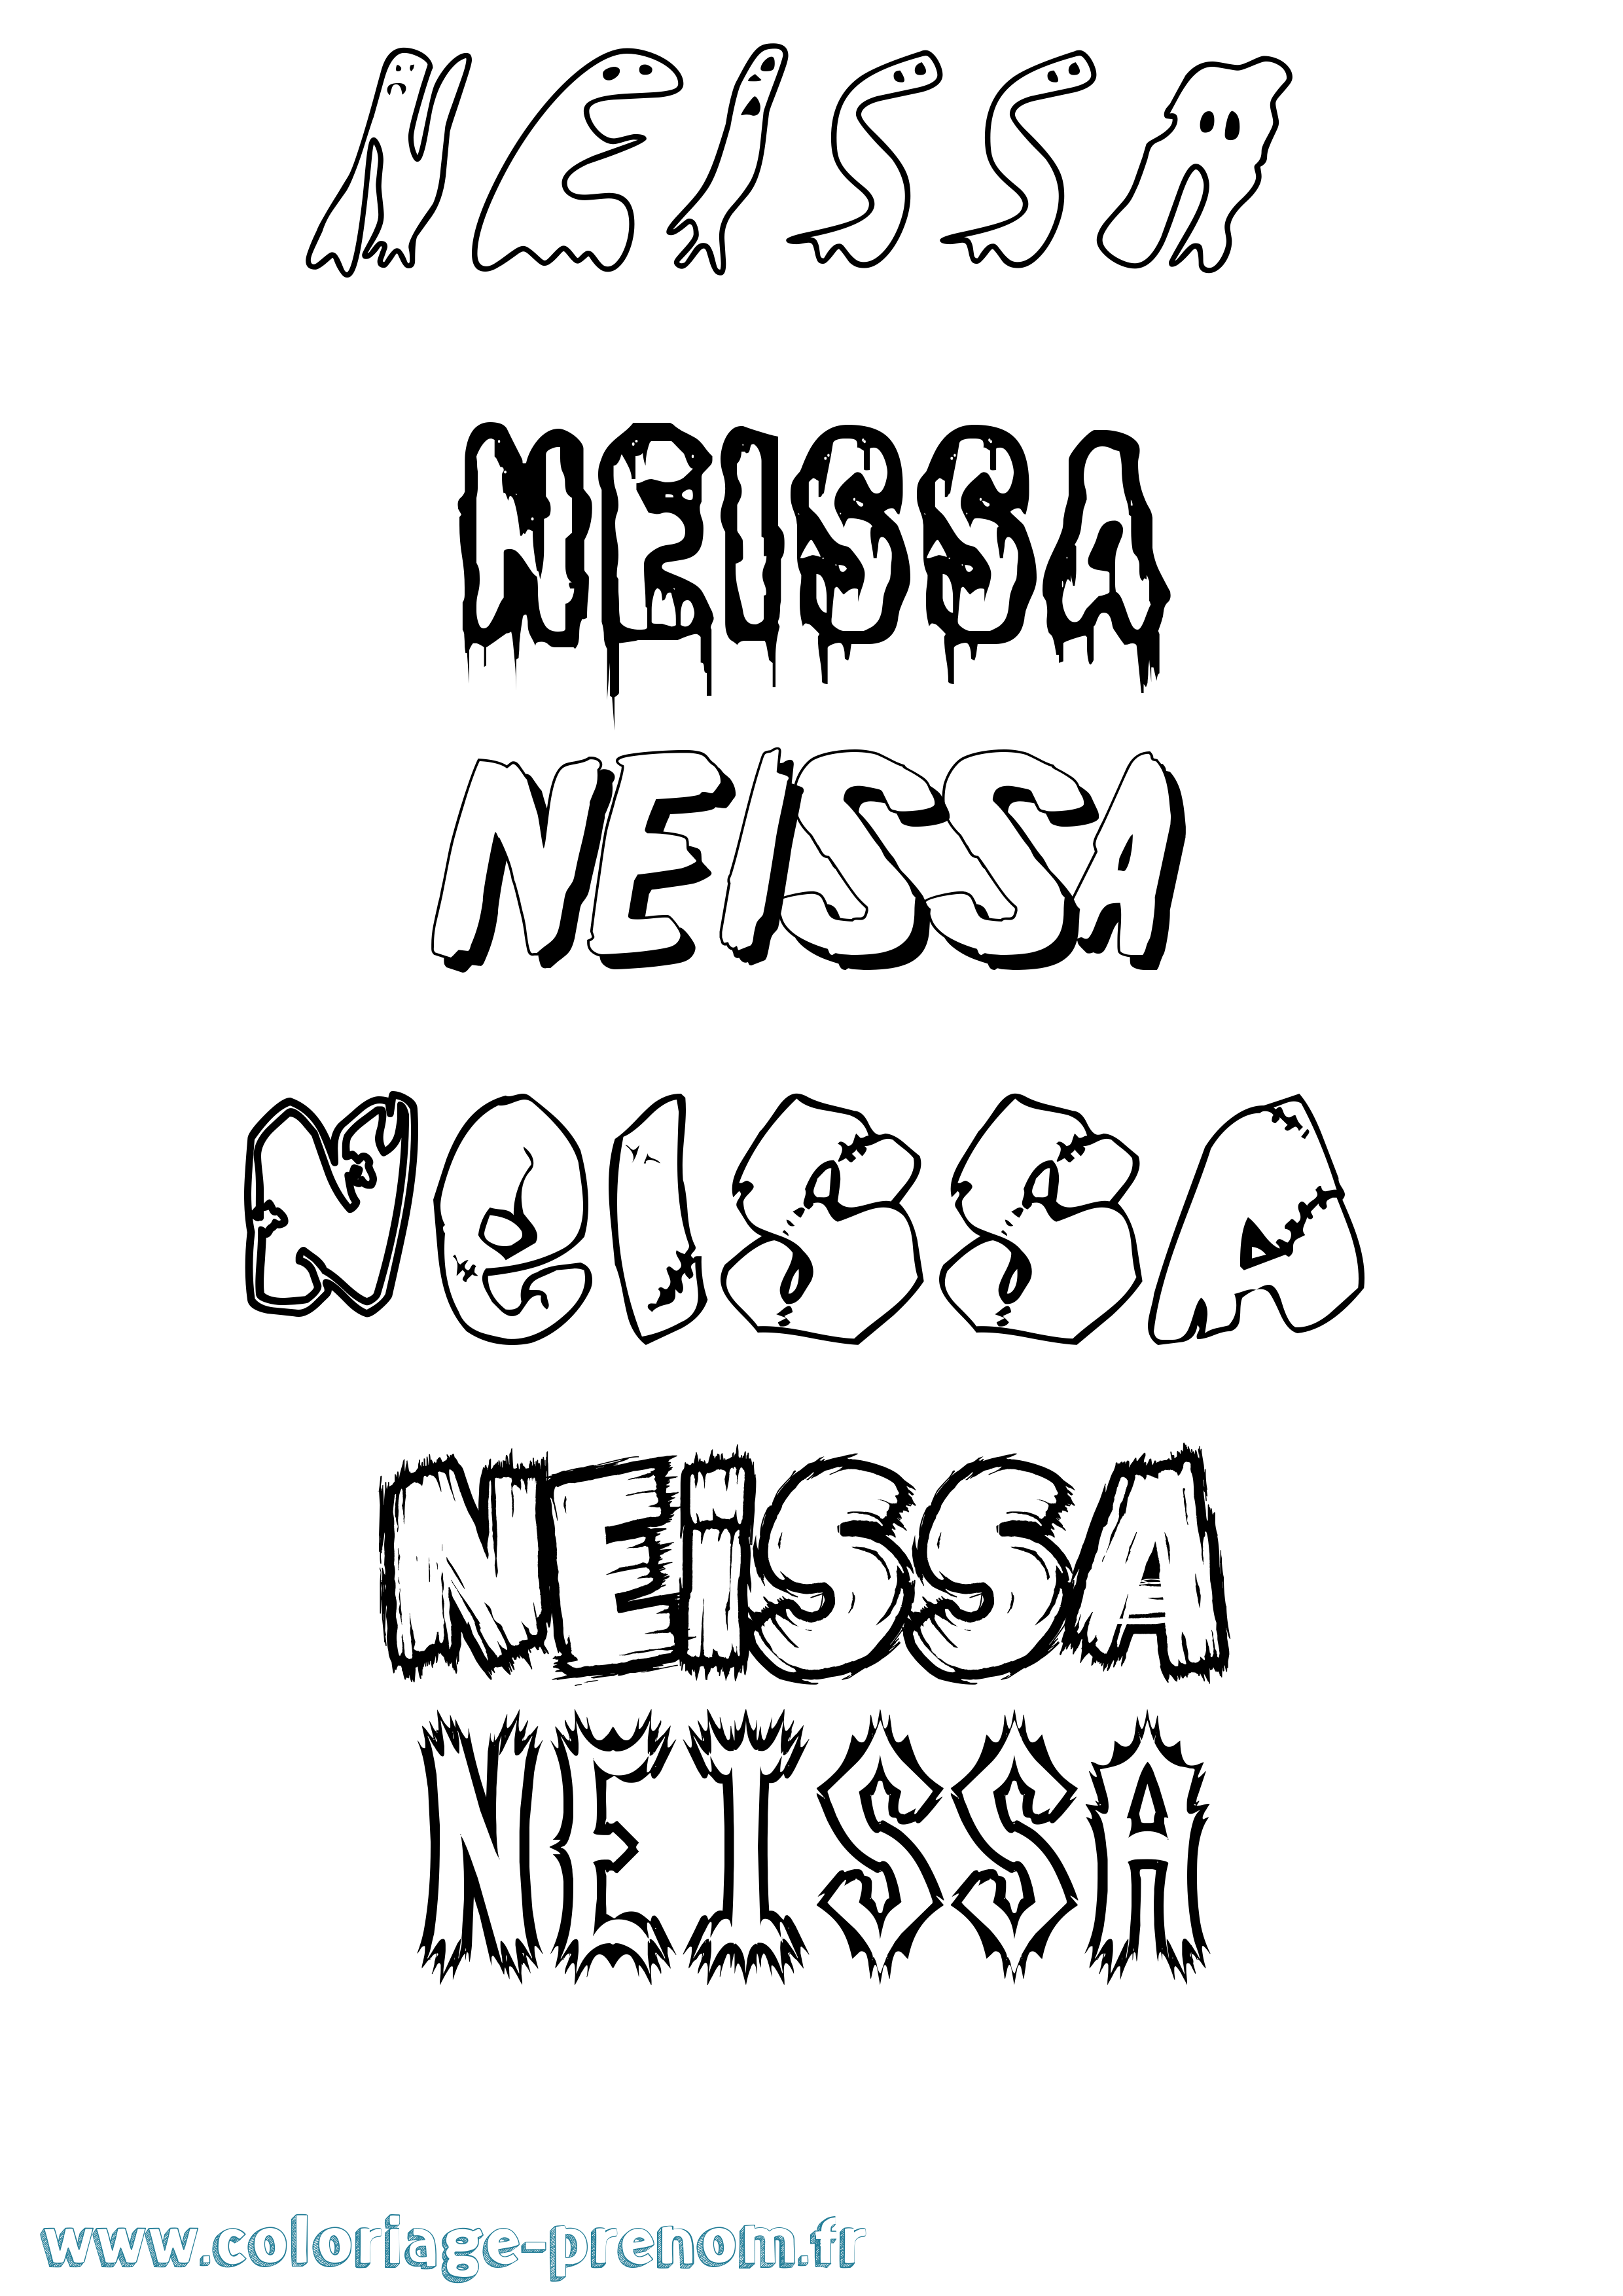 Coloriage prénom Neissa Frisson